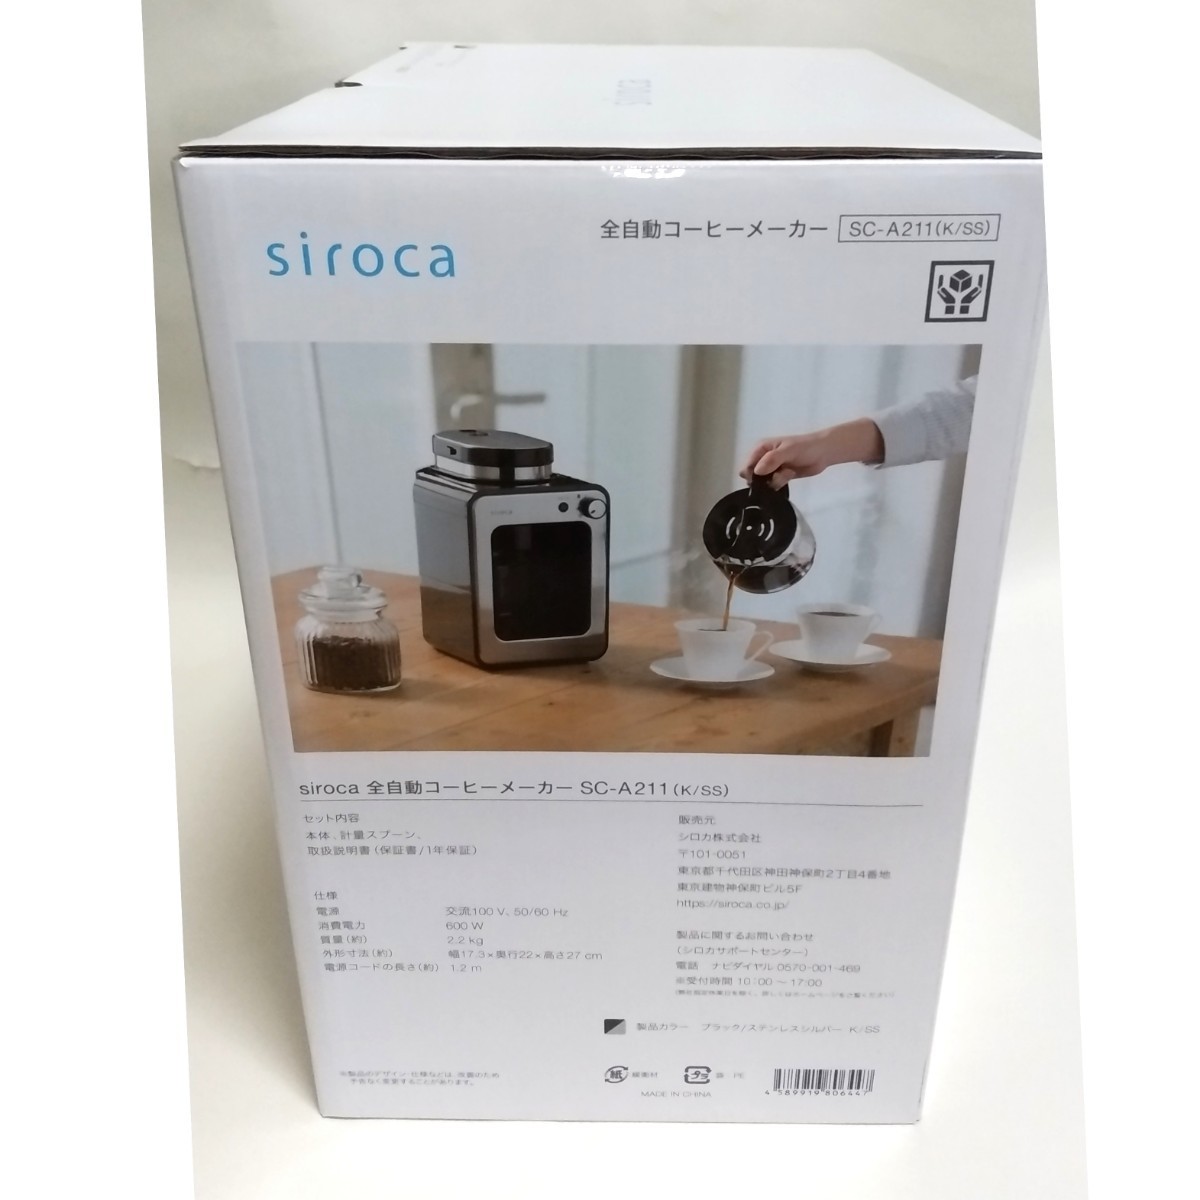 新品未開封 シロカ siroca 全自動コーヒーメーカー SC-A211 未使用